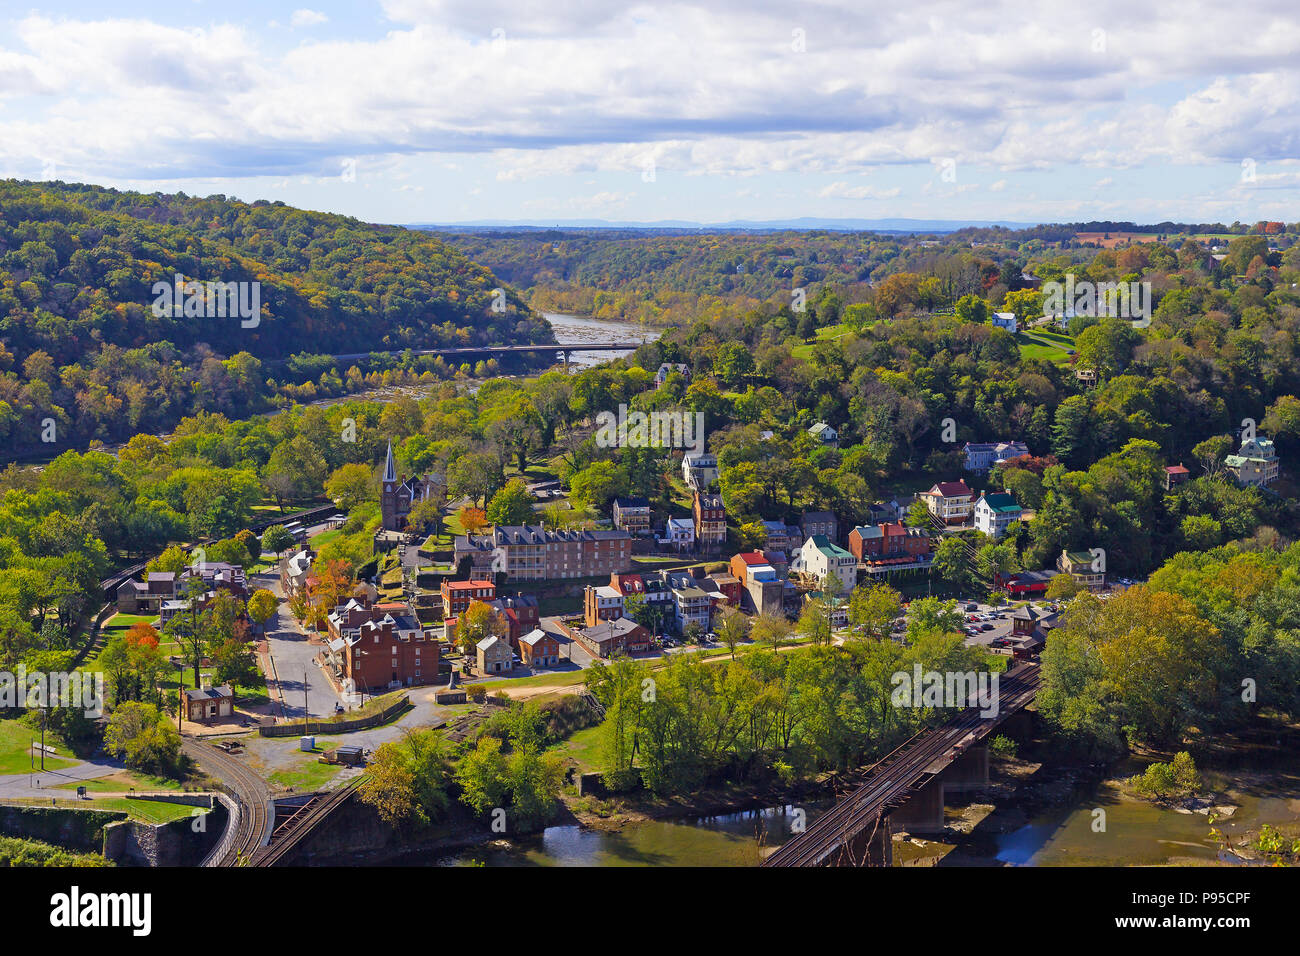 Eine Luftaufnahme auf Harpers Ferry historische Stadt und Park, West Virginia, USA. Anfang Herbst Landschaft mit Potomac und Shenandoah Flüsse. Stockfoto